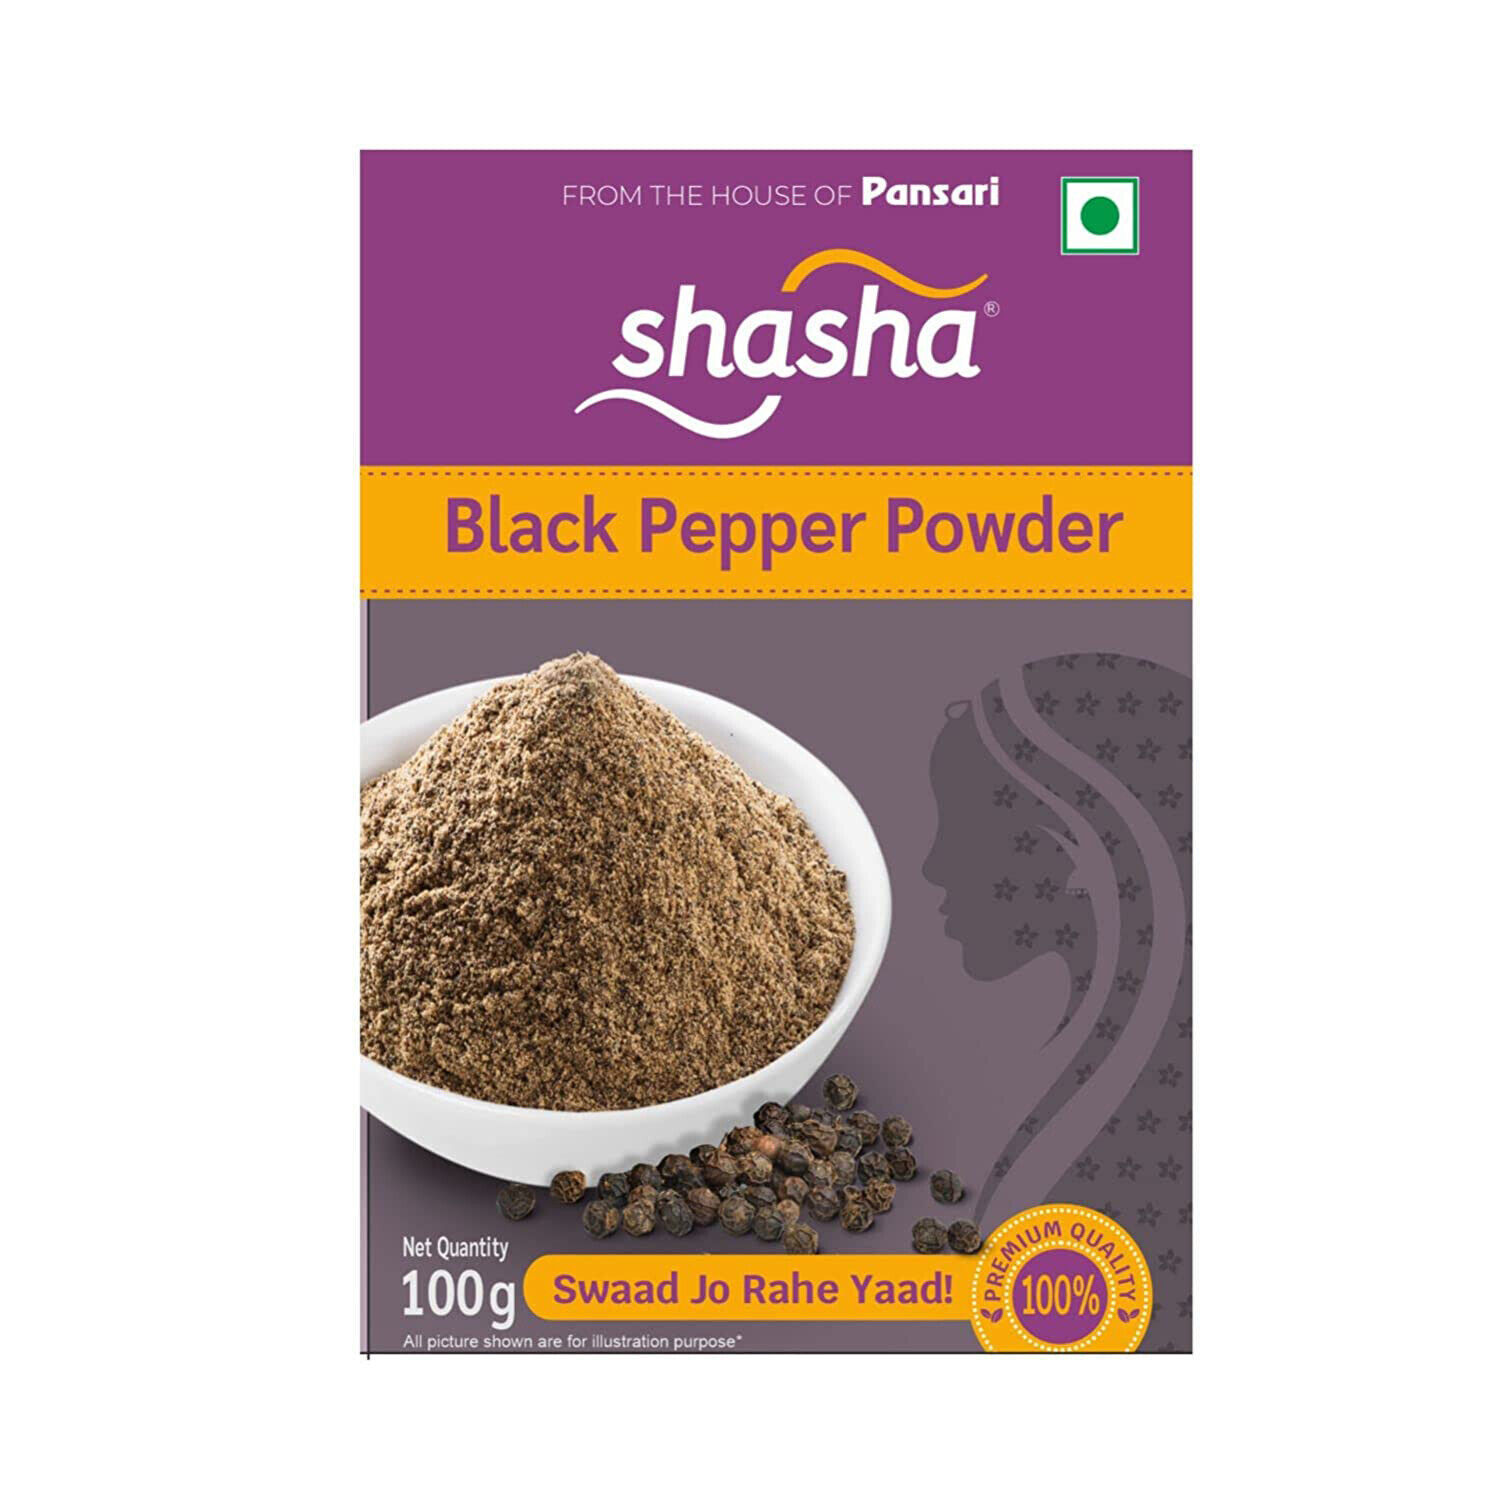 Shasha Black Pepper Powder No Artificial Colors & No Preservatives 100g - $11.76 - $18.31